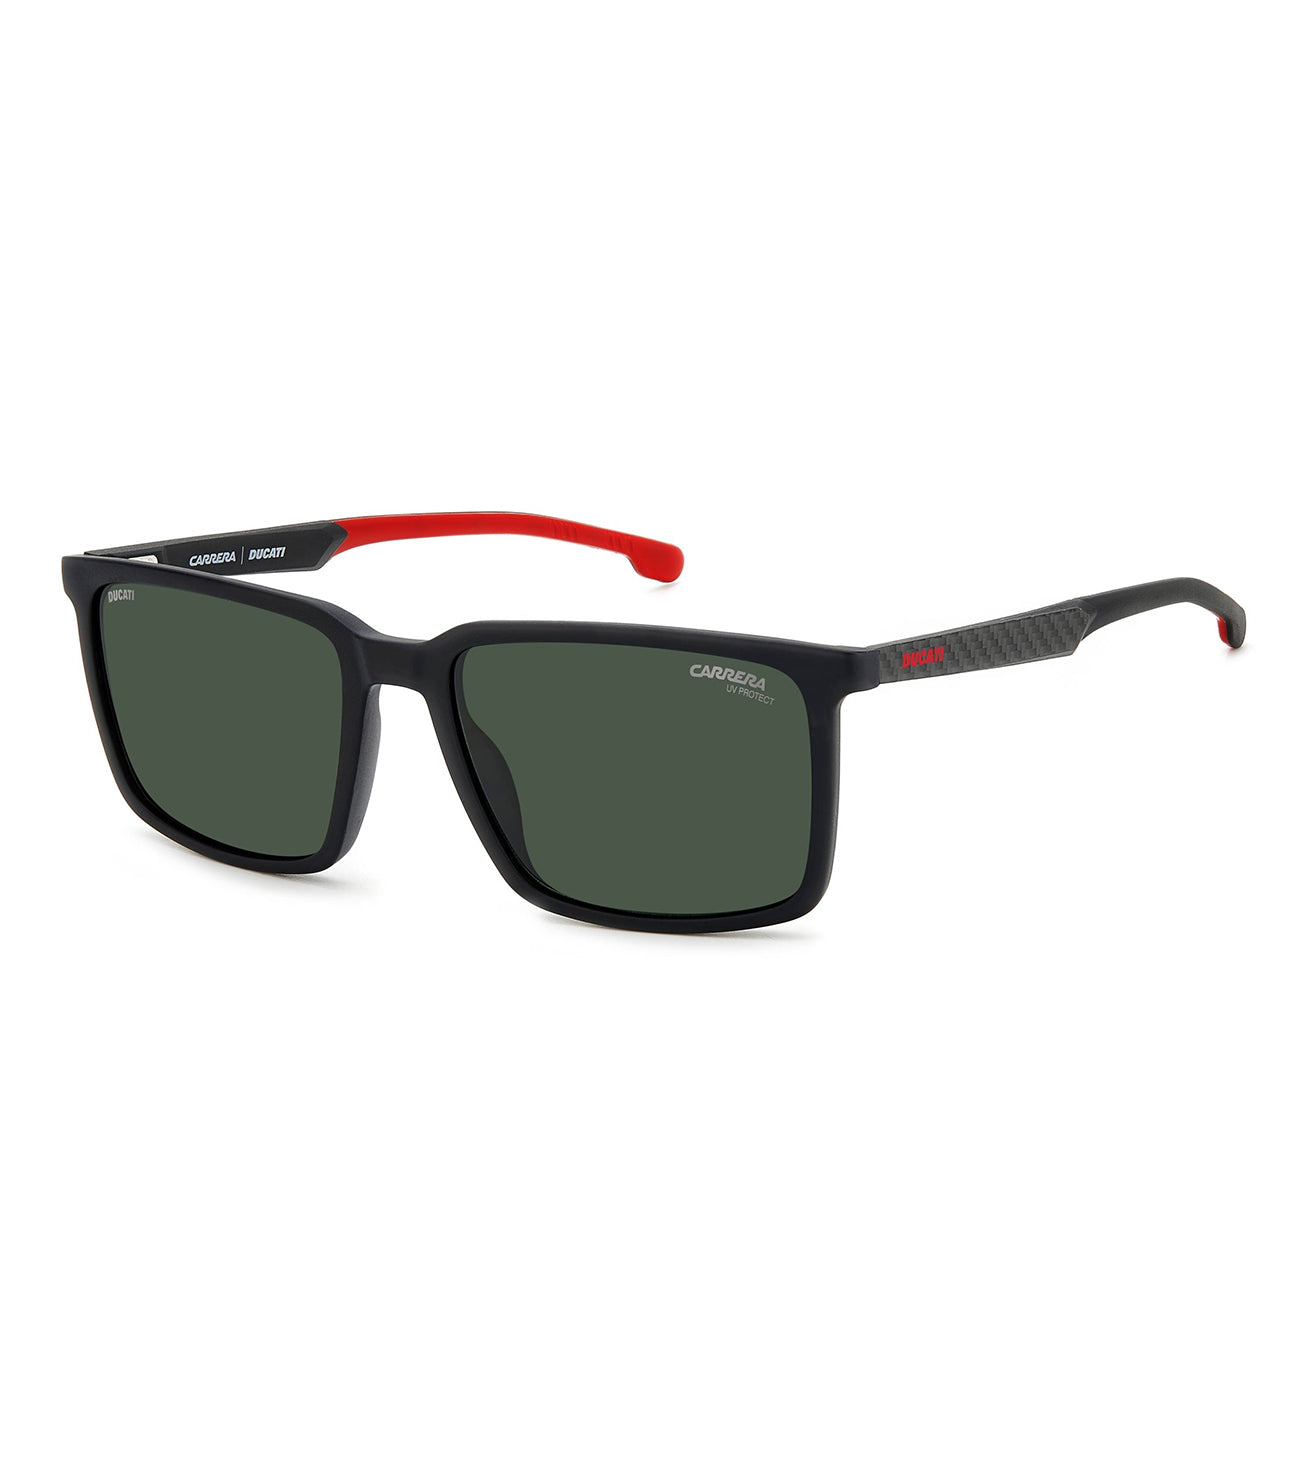 Carrera Ducati Men's Green Square Sunglasses